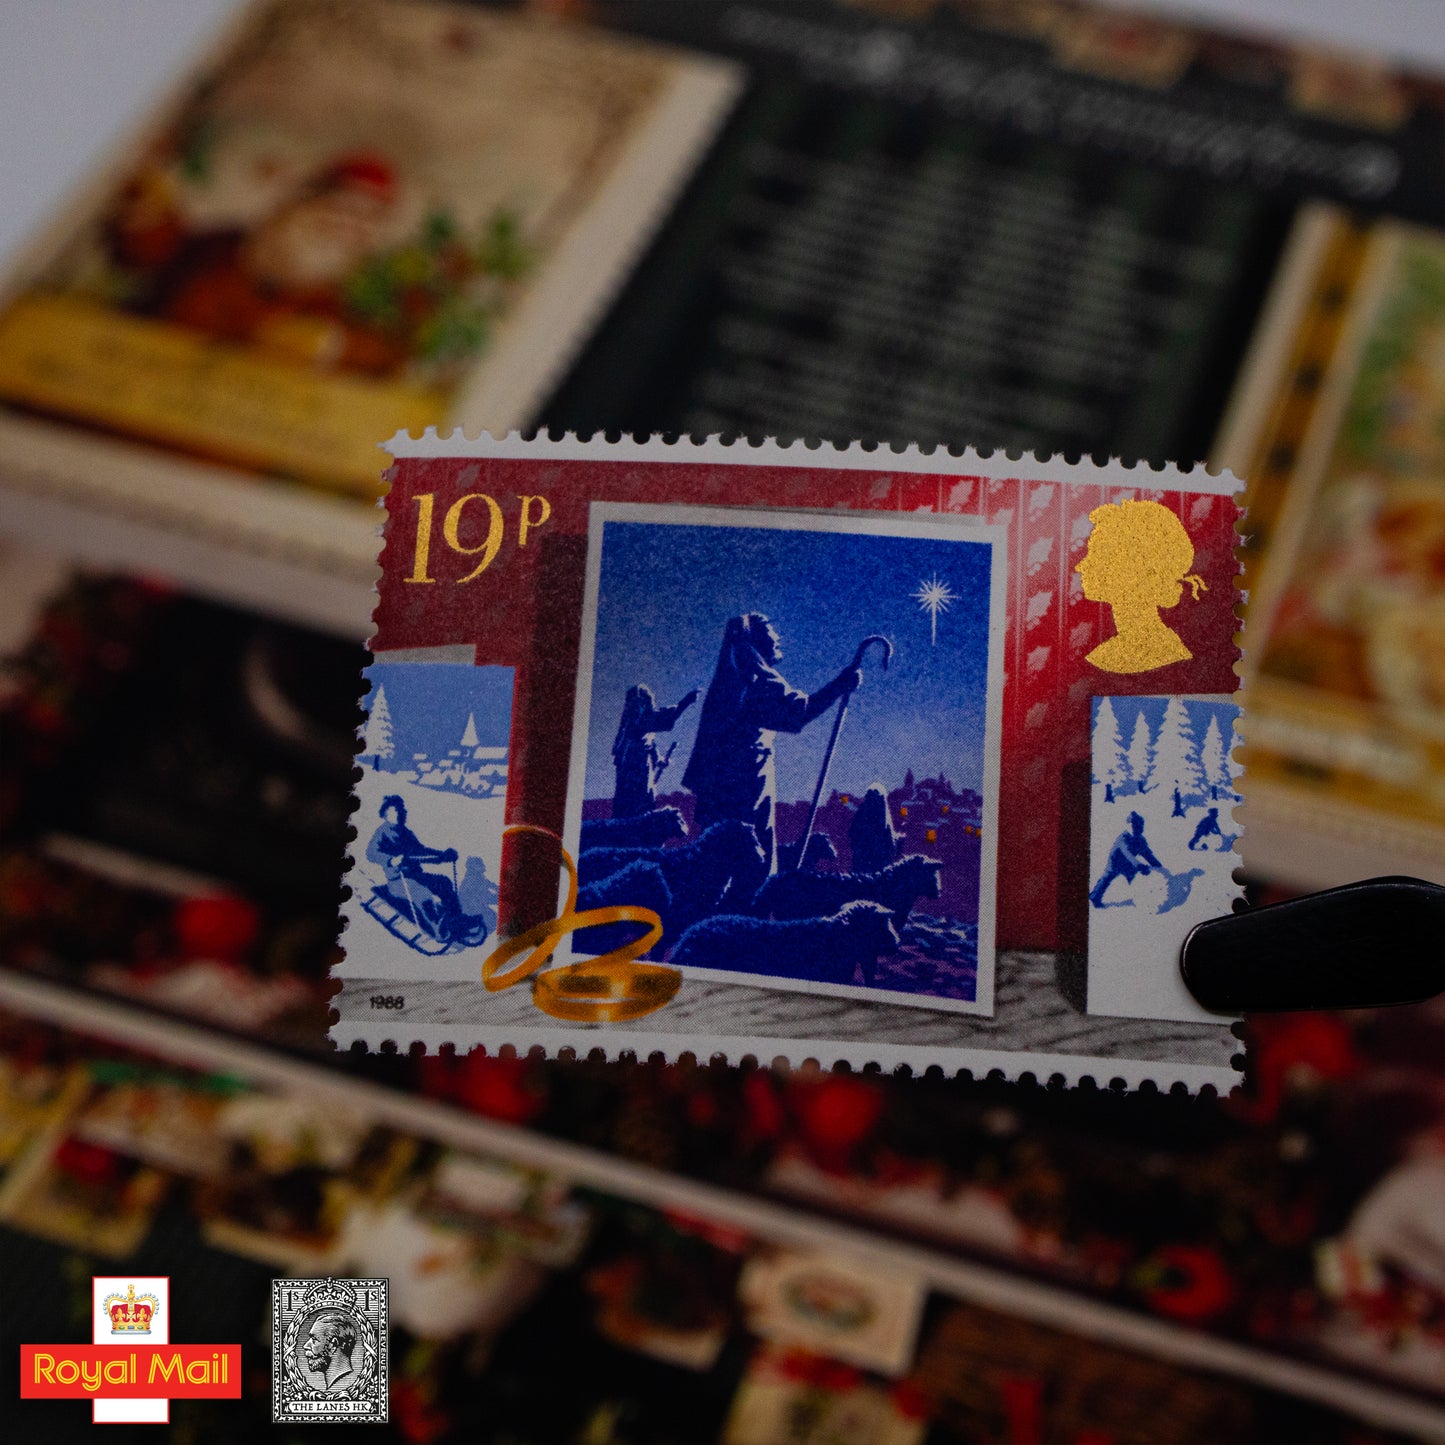 #194: 1988年 聖誕節 紀念郵票展示包